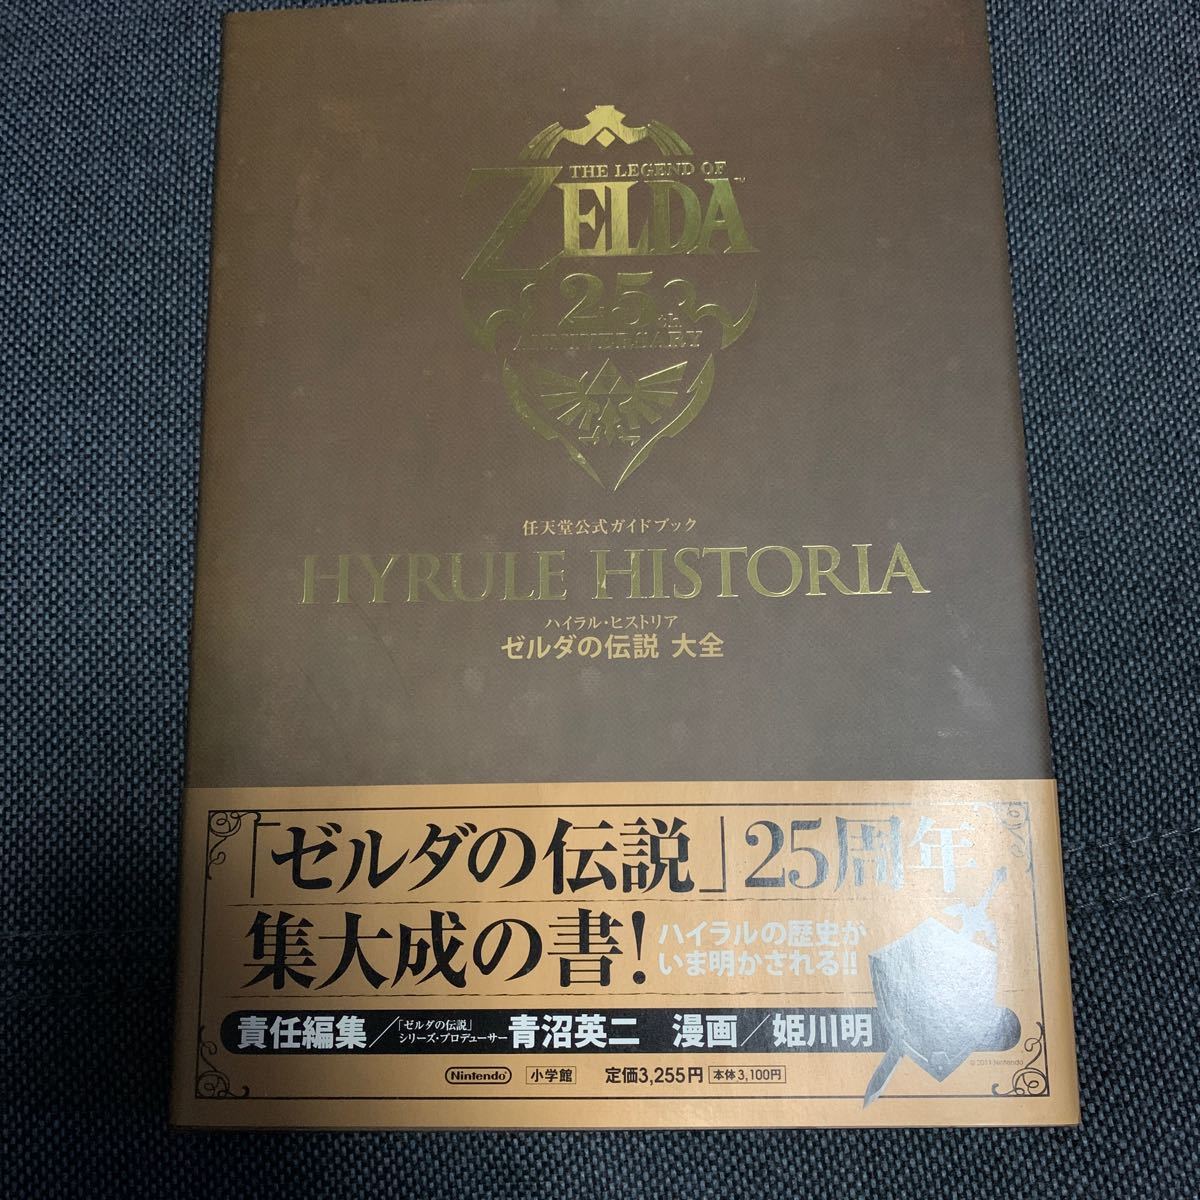 任天堂公式ガイドブック「ハイラル・ヒストリア ゼルダの伝説 大全」（初版）